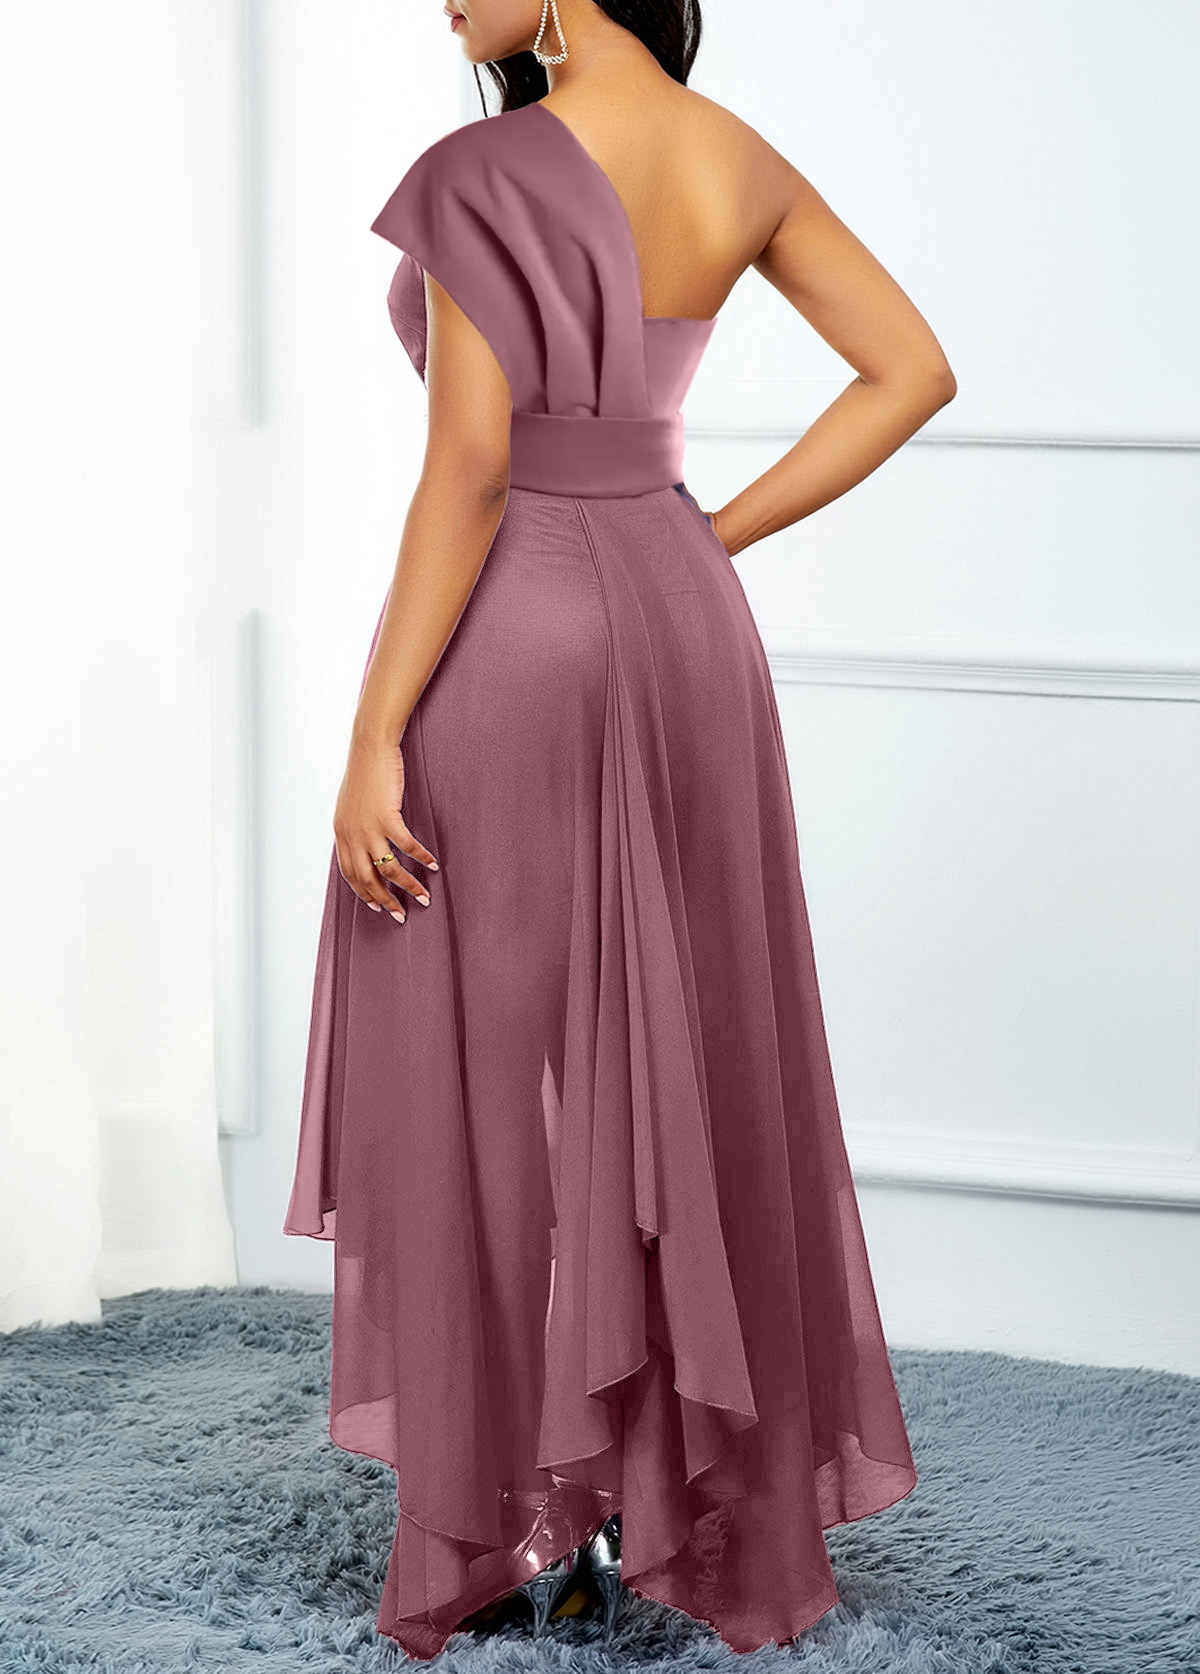 Dusty Pink Asymmetric Hem High Low Belted Dress